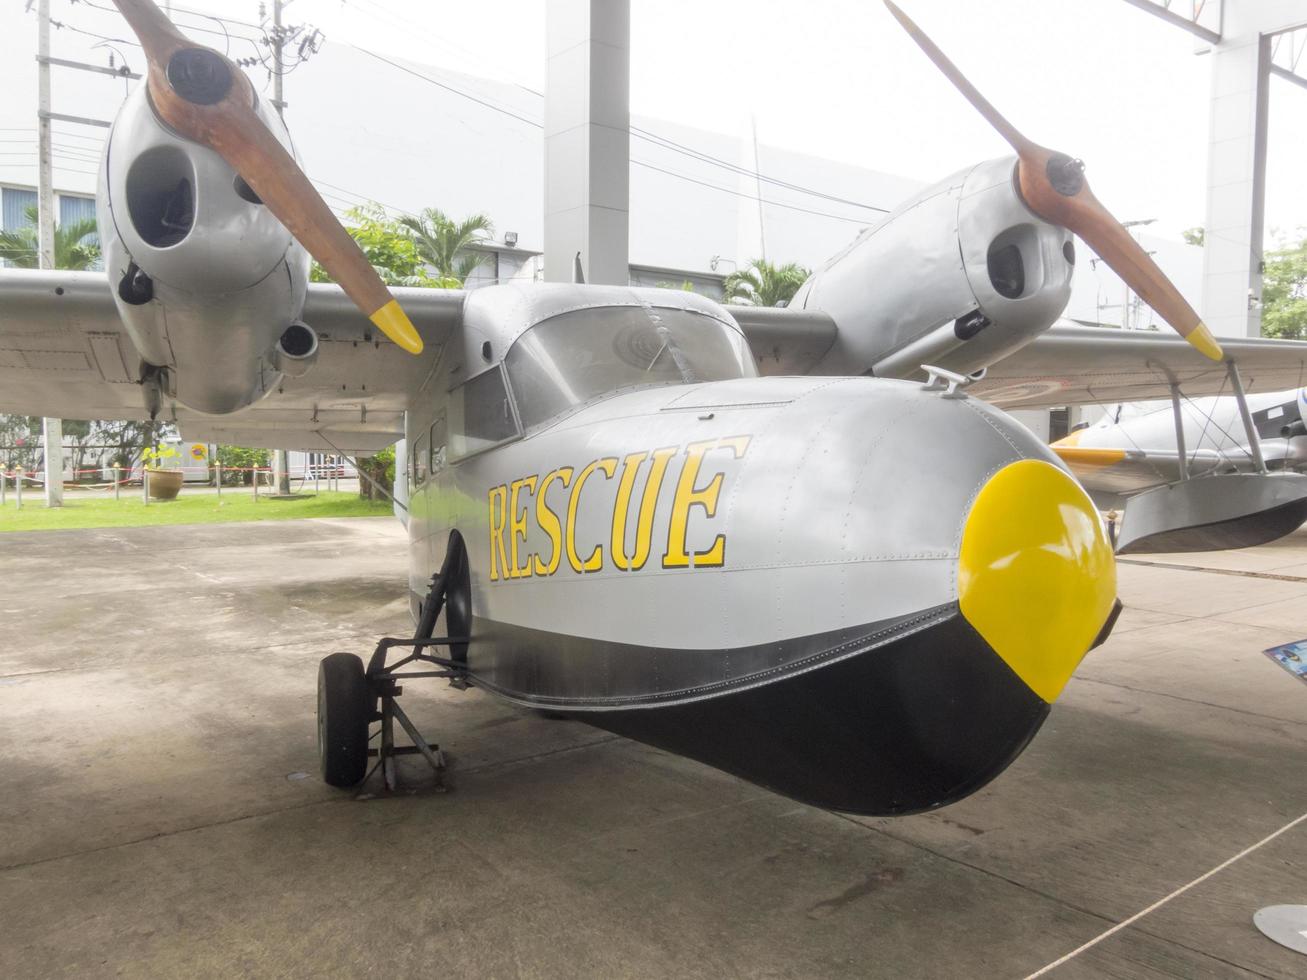 museu da força aérea tailandesa real bangkokthailand18 de agosto de 2018 o exterior da aeronave tem muitas aeronaves grandes. para aprender mais de perto. em 18 de agosto de 2018 na Tailândia. foto